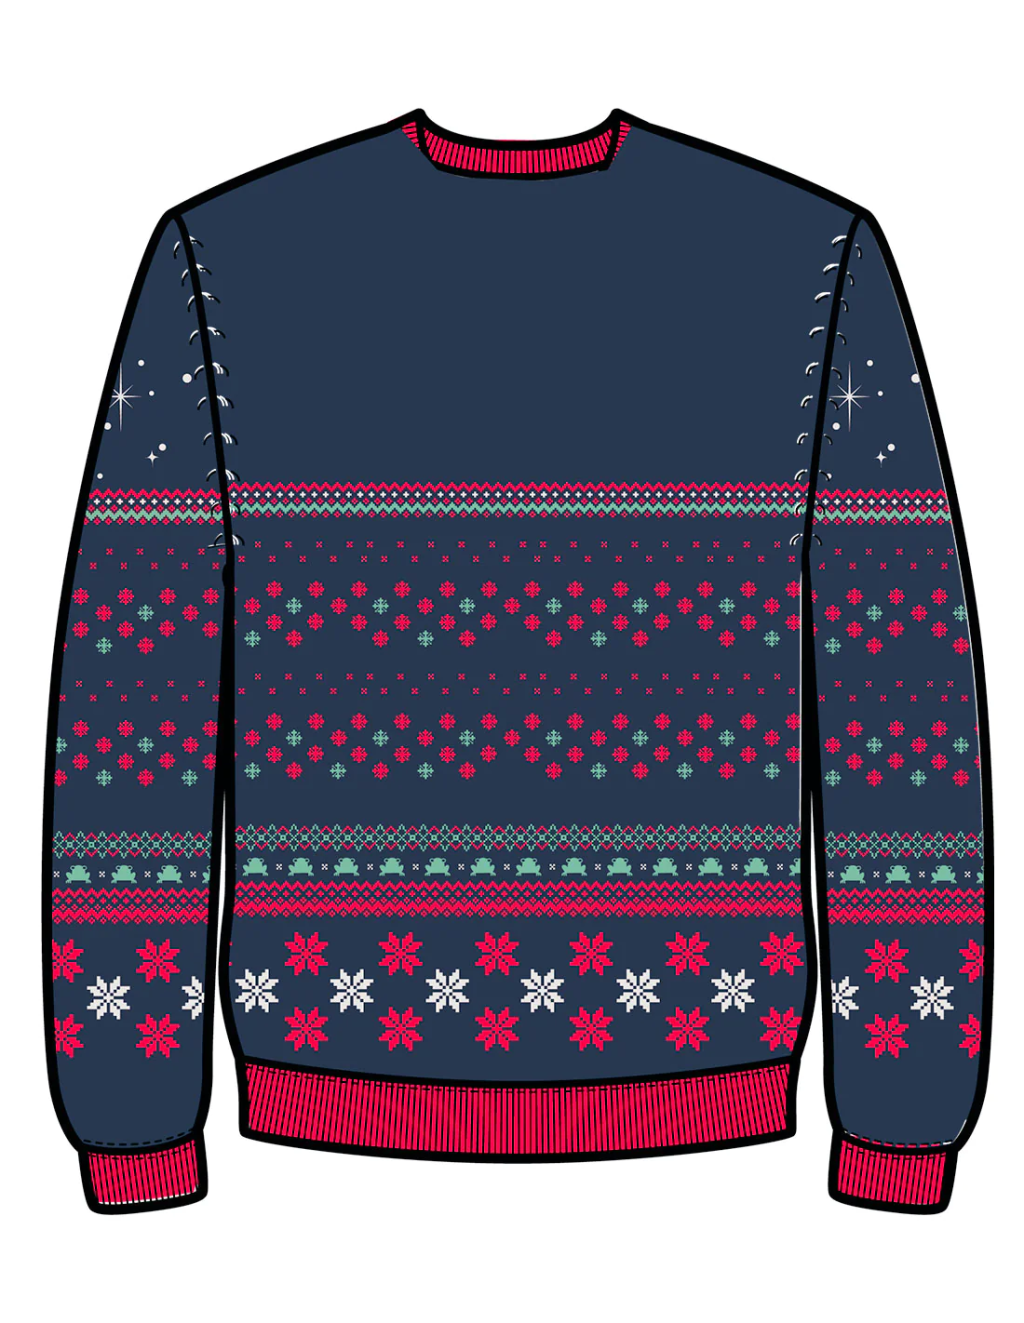 THE MANDALORIAN - Grogu - Men Christmas Sweaters (XL)